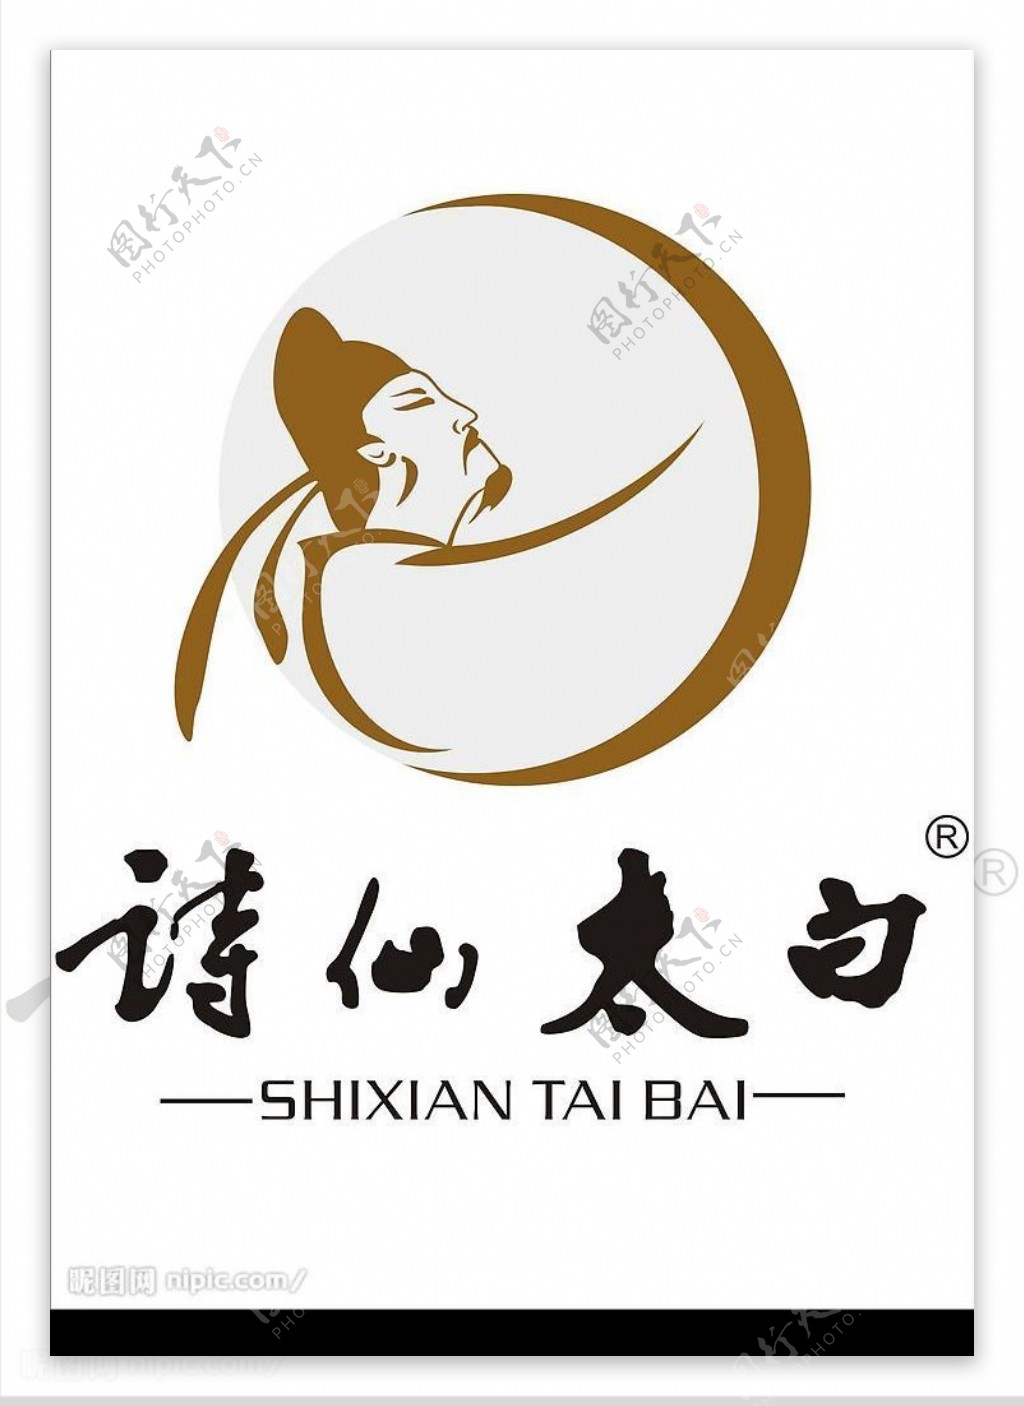 诗仙太白logo图片